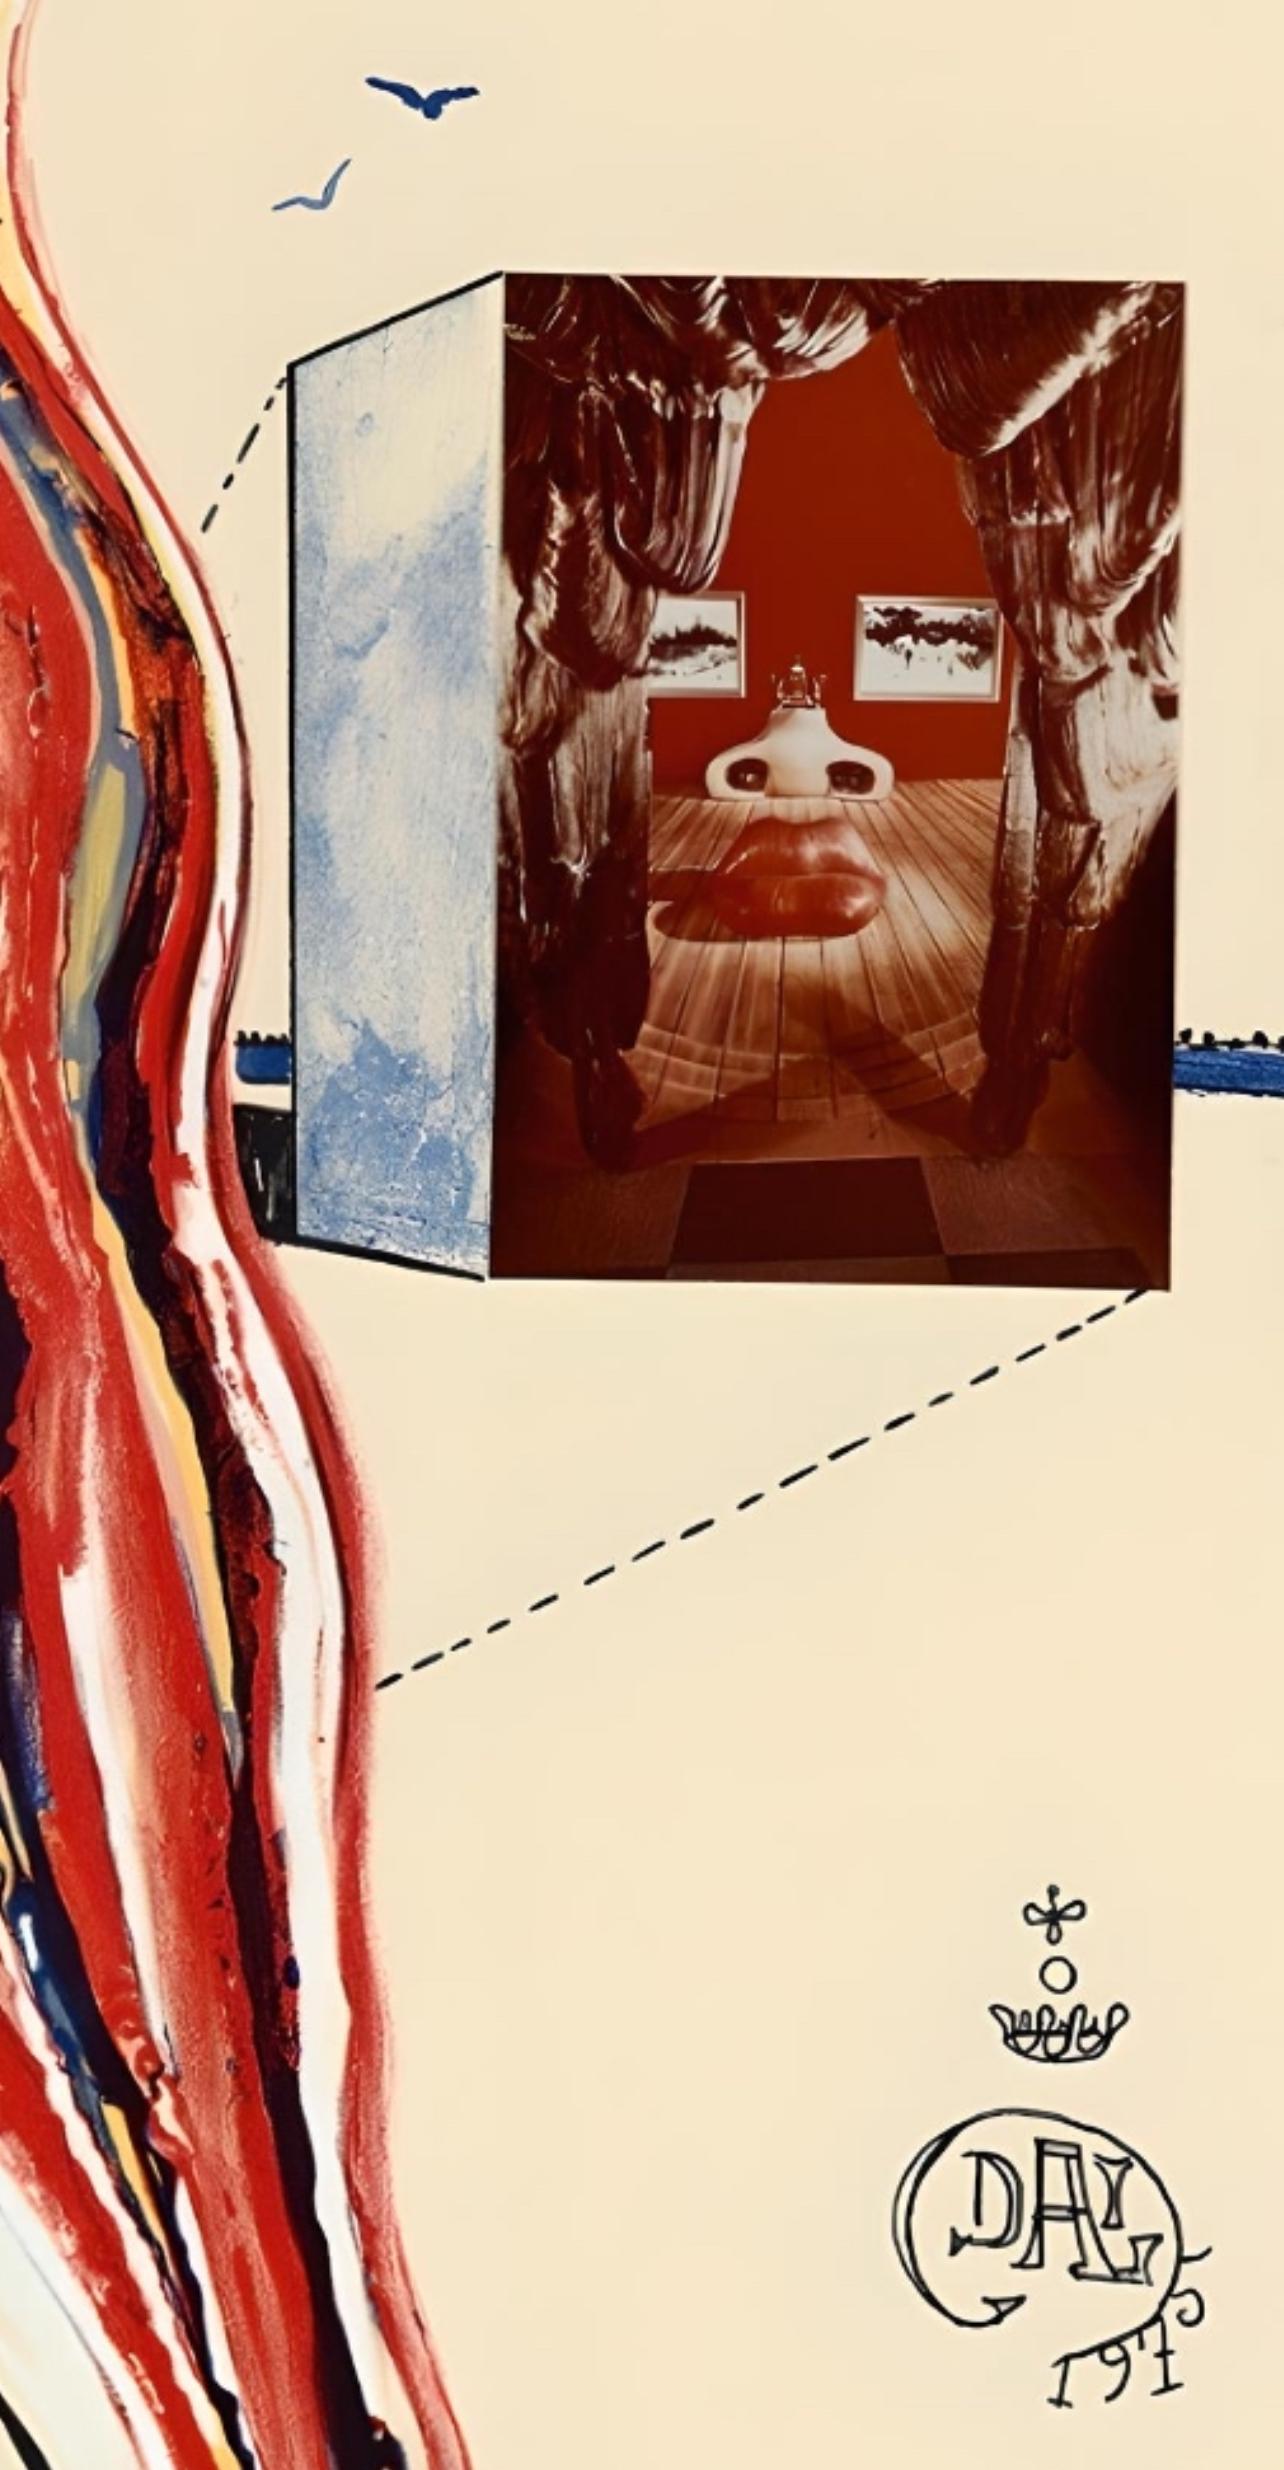 Flüssiges und gasförmiges Fernsehen (Michler/Löpsinger 824; Feld 75-11C), S. Dali (Surrealismus), Print, von Salvador Dalí